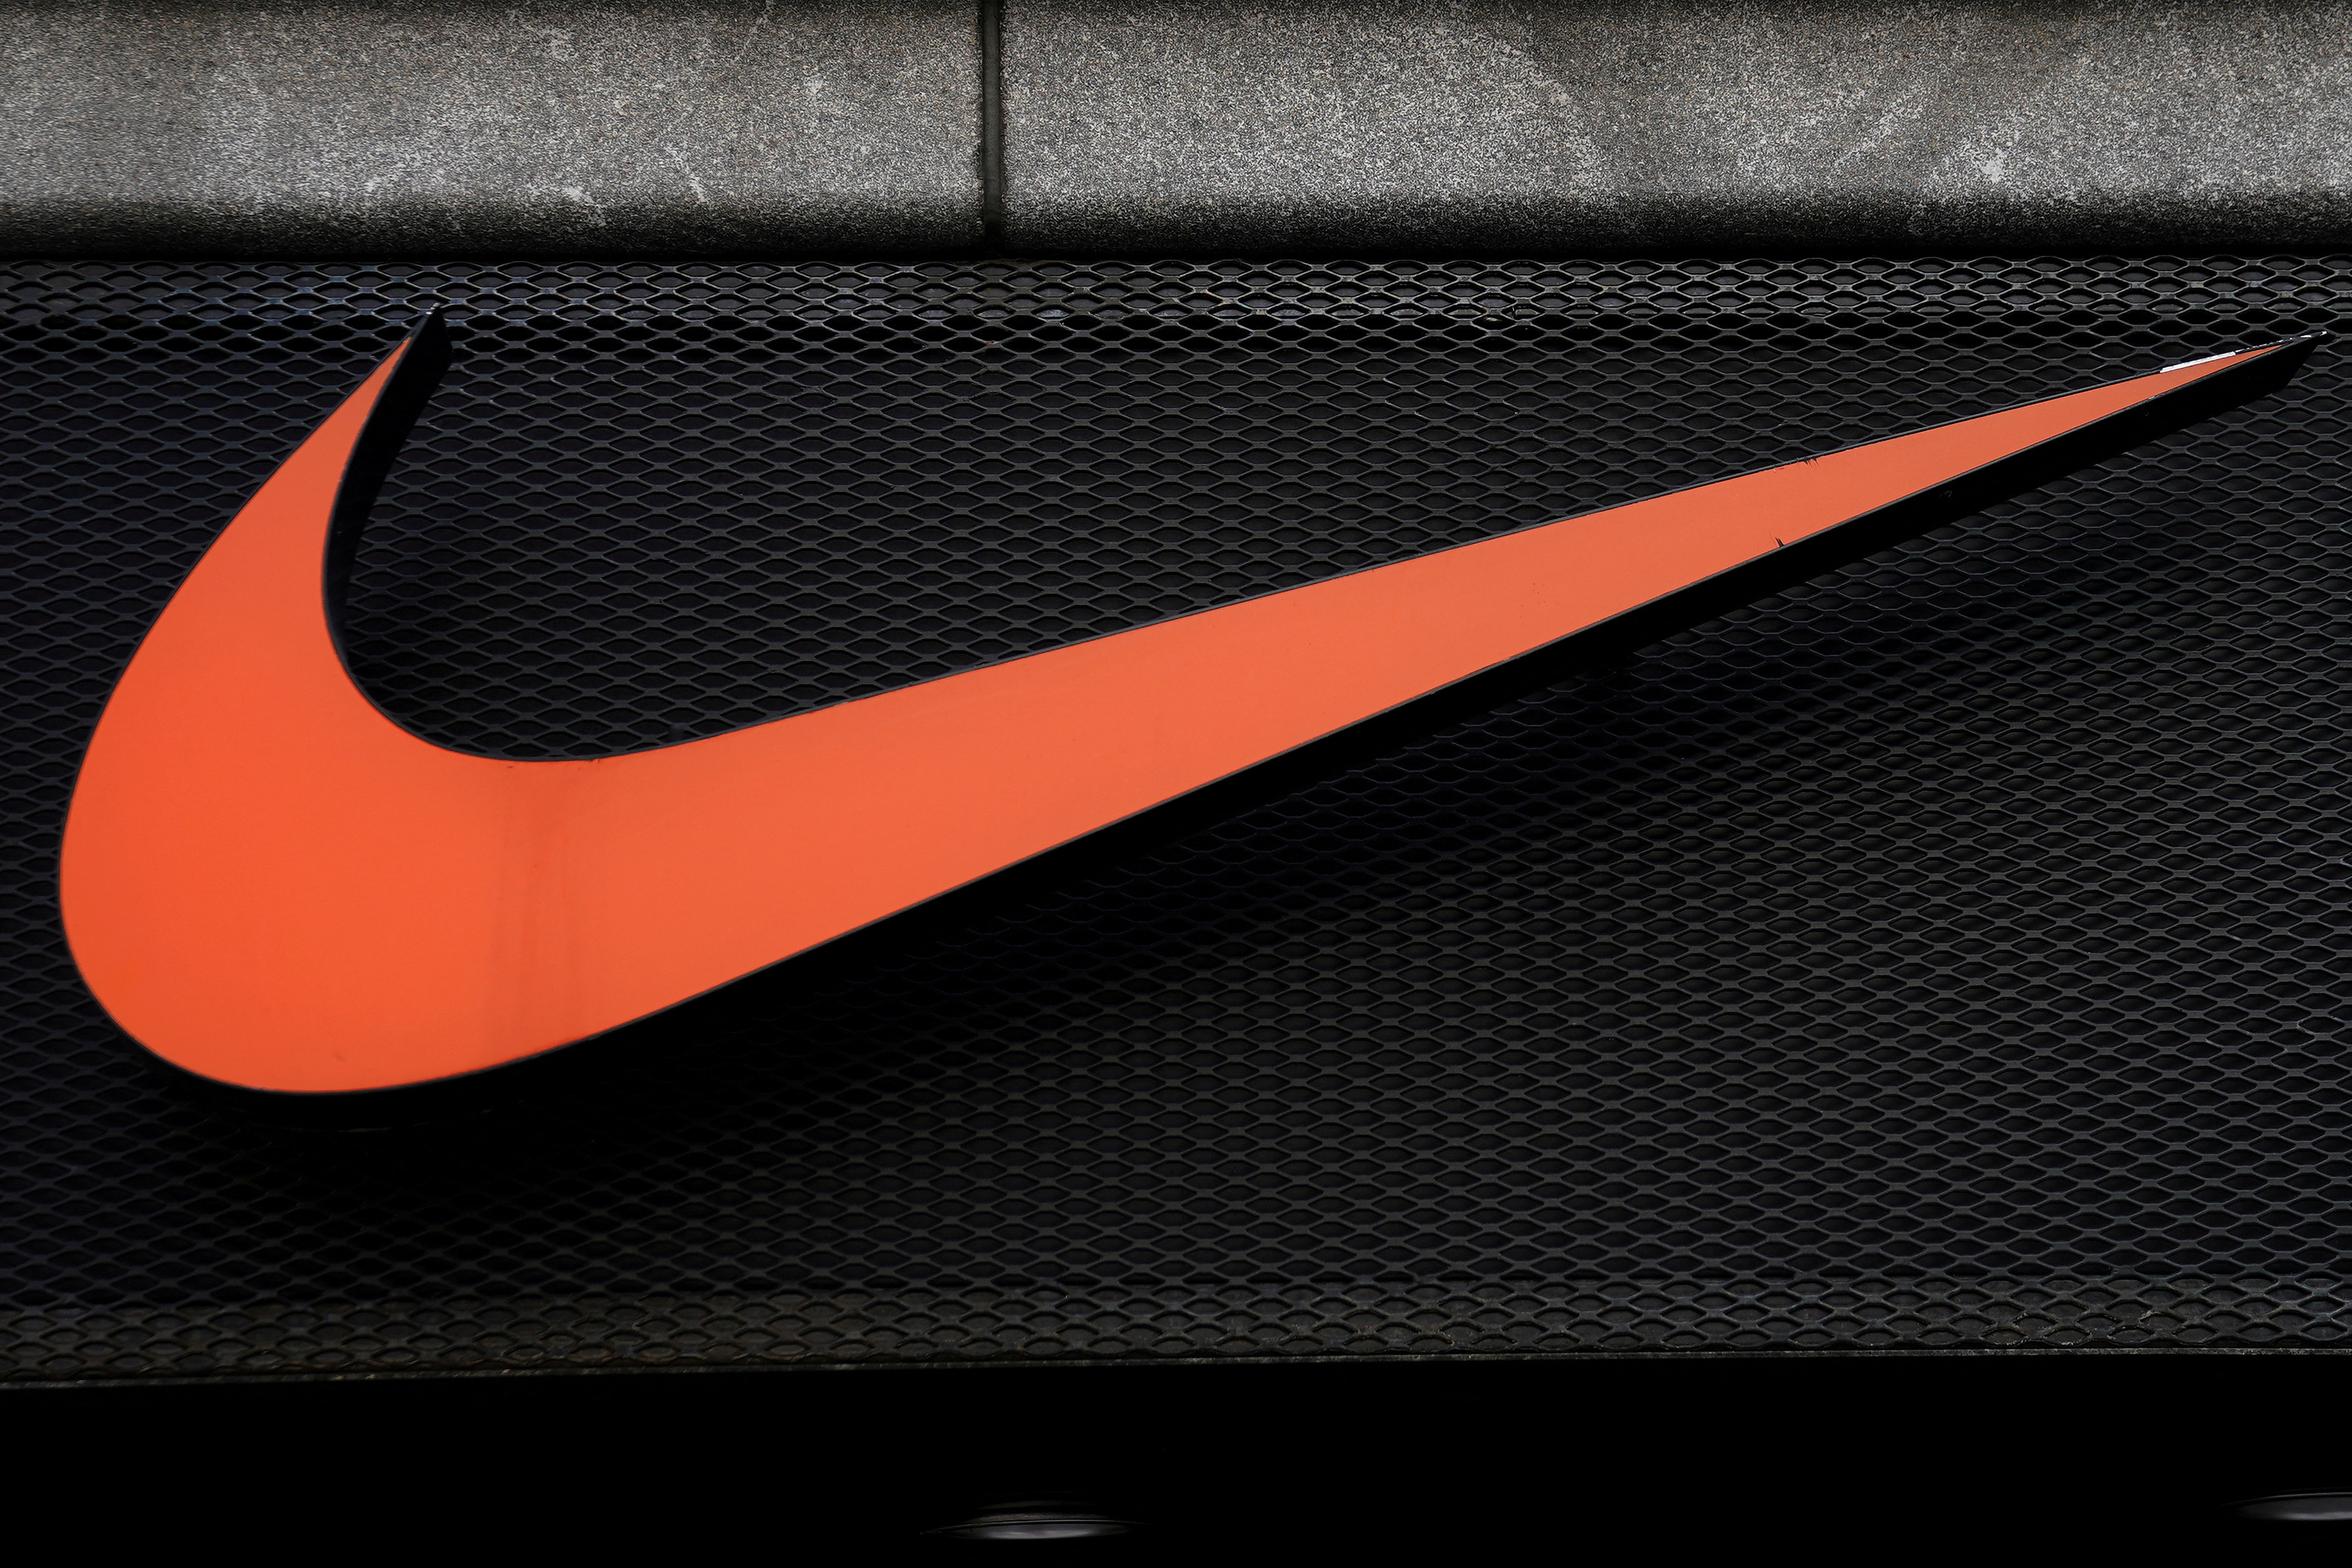 Nike's powerhouse labels lose footing against upstart brands